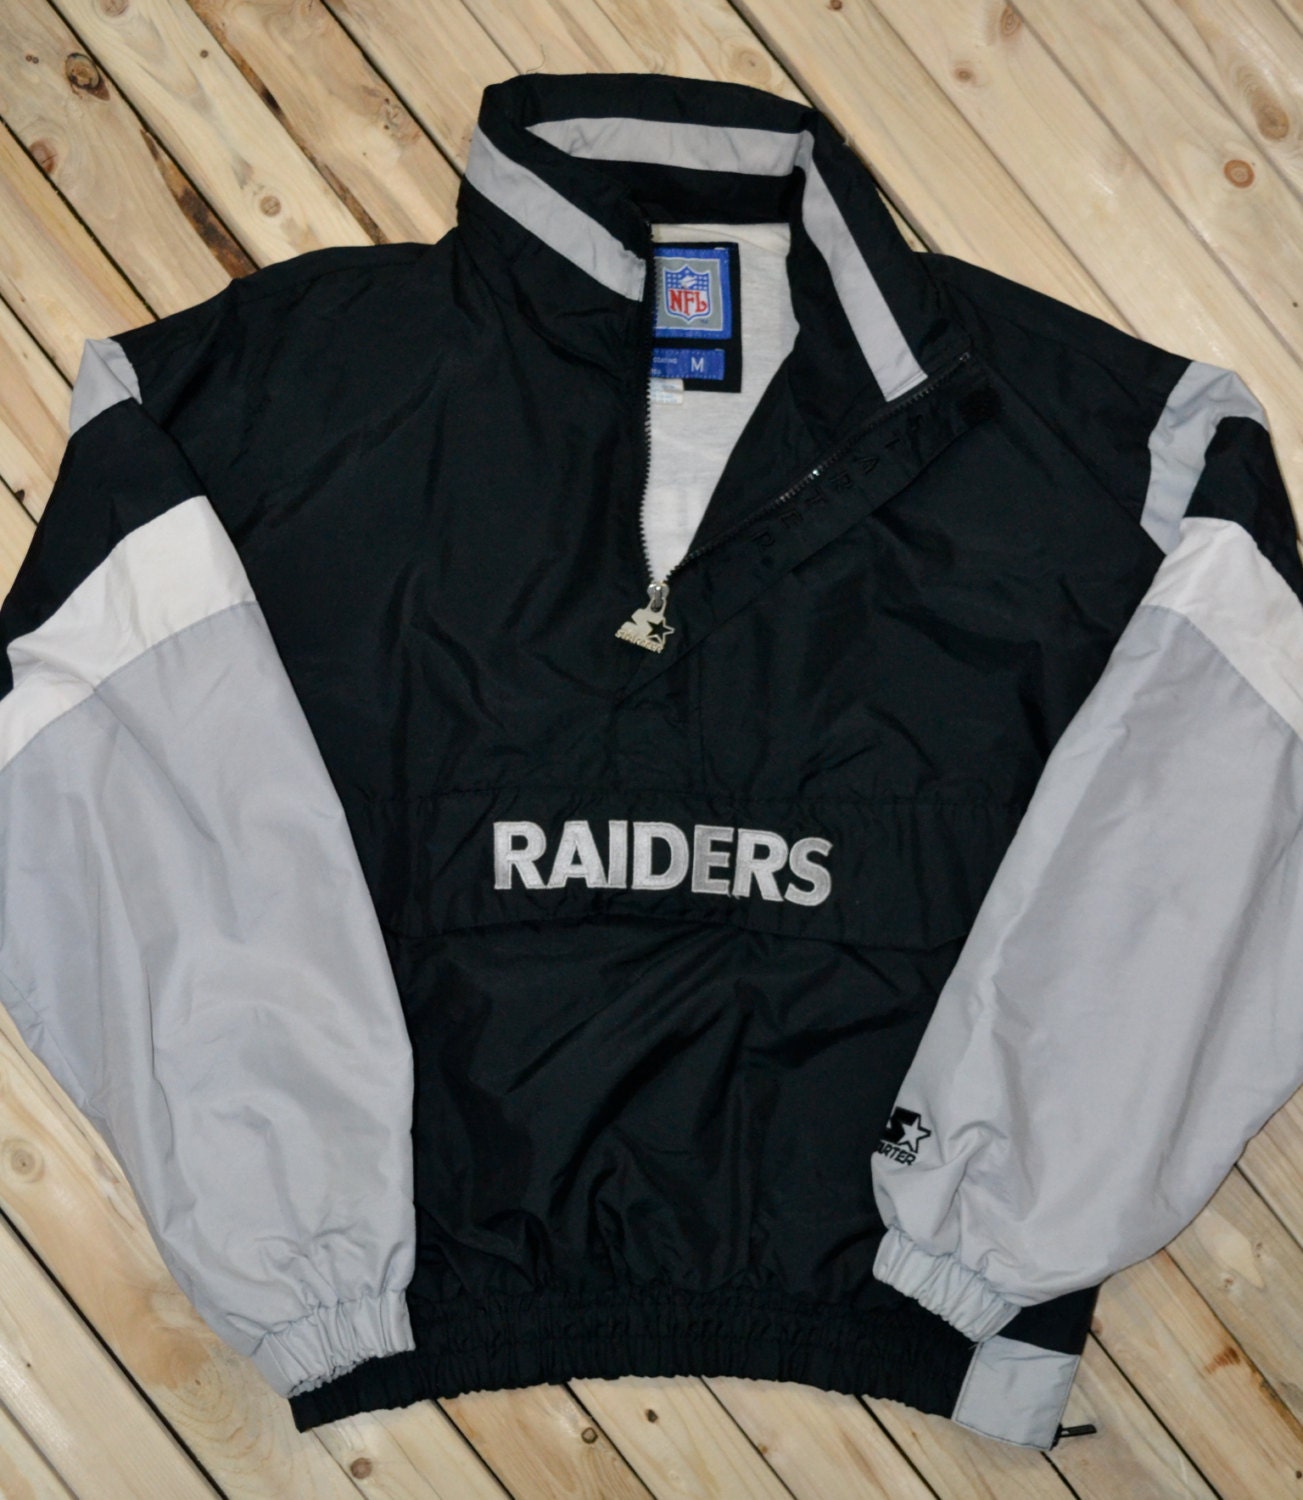 Raiders Starter jacket windbreaker half zip pullover